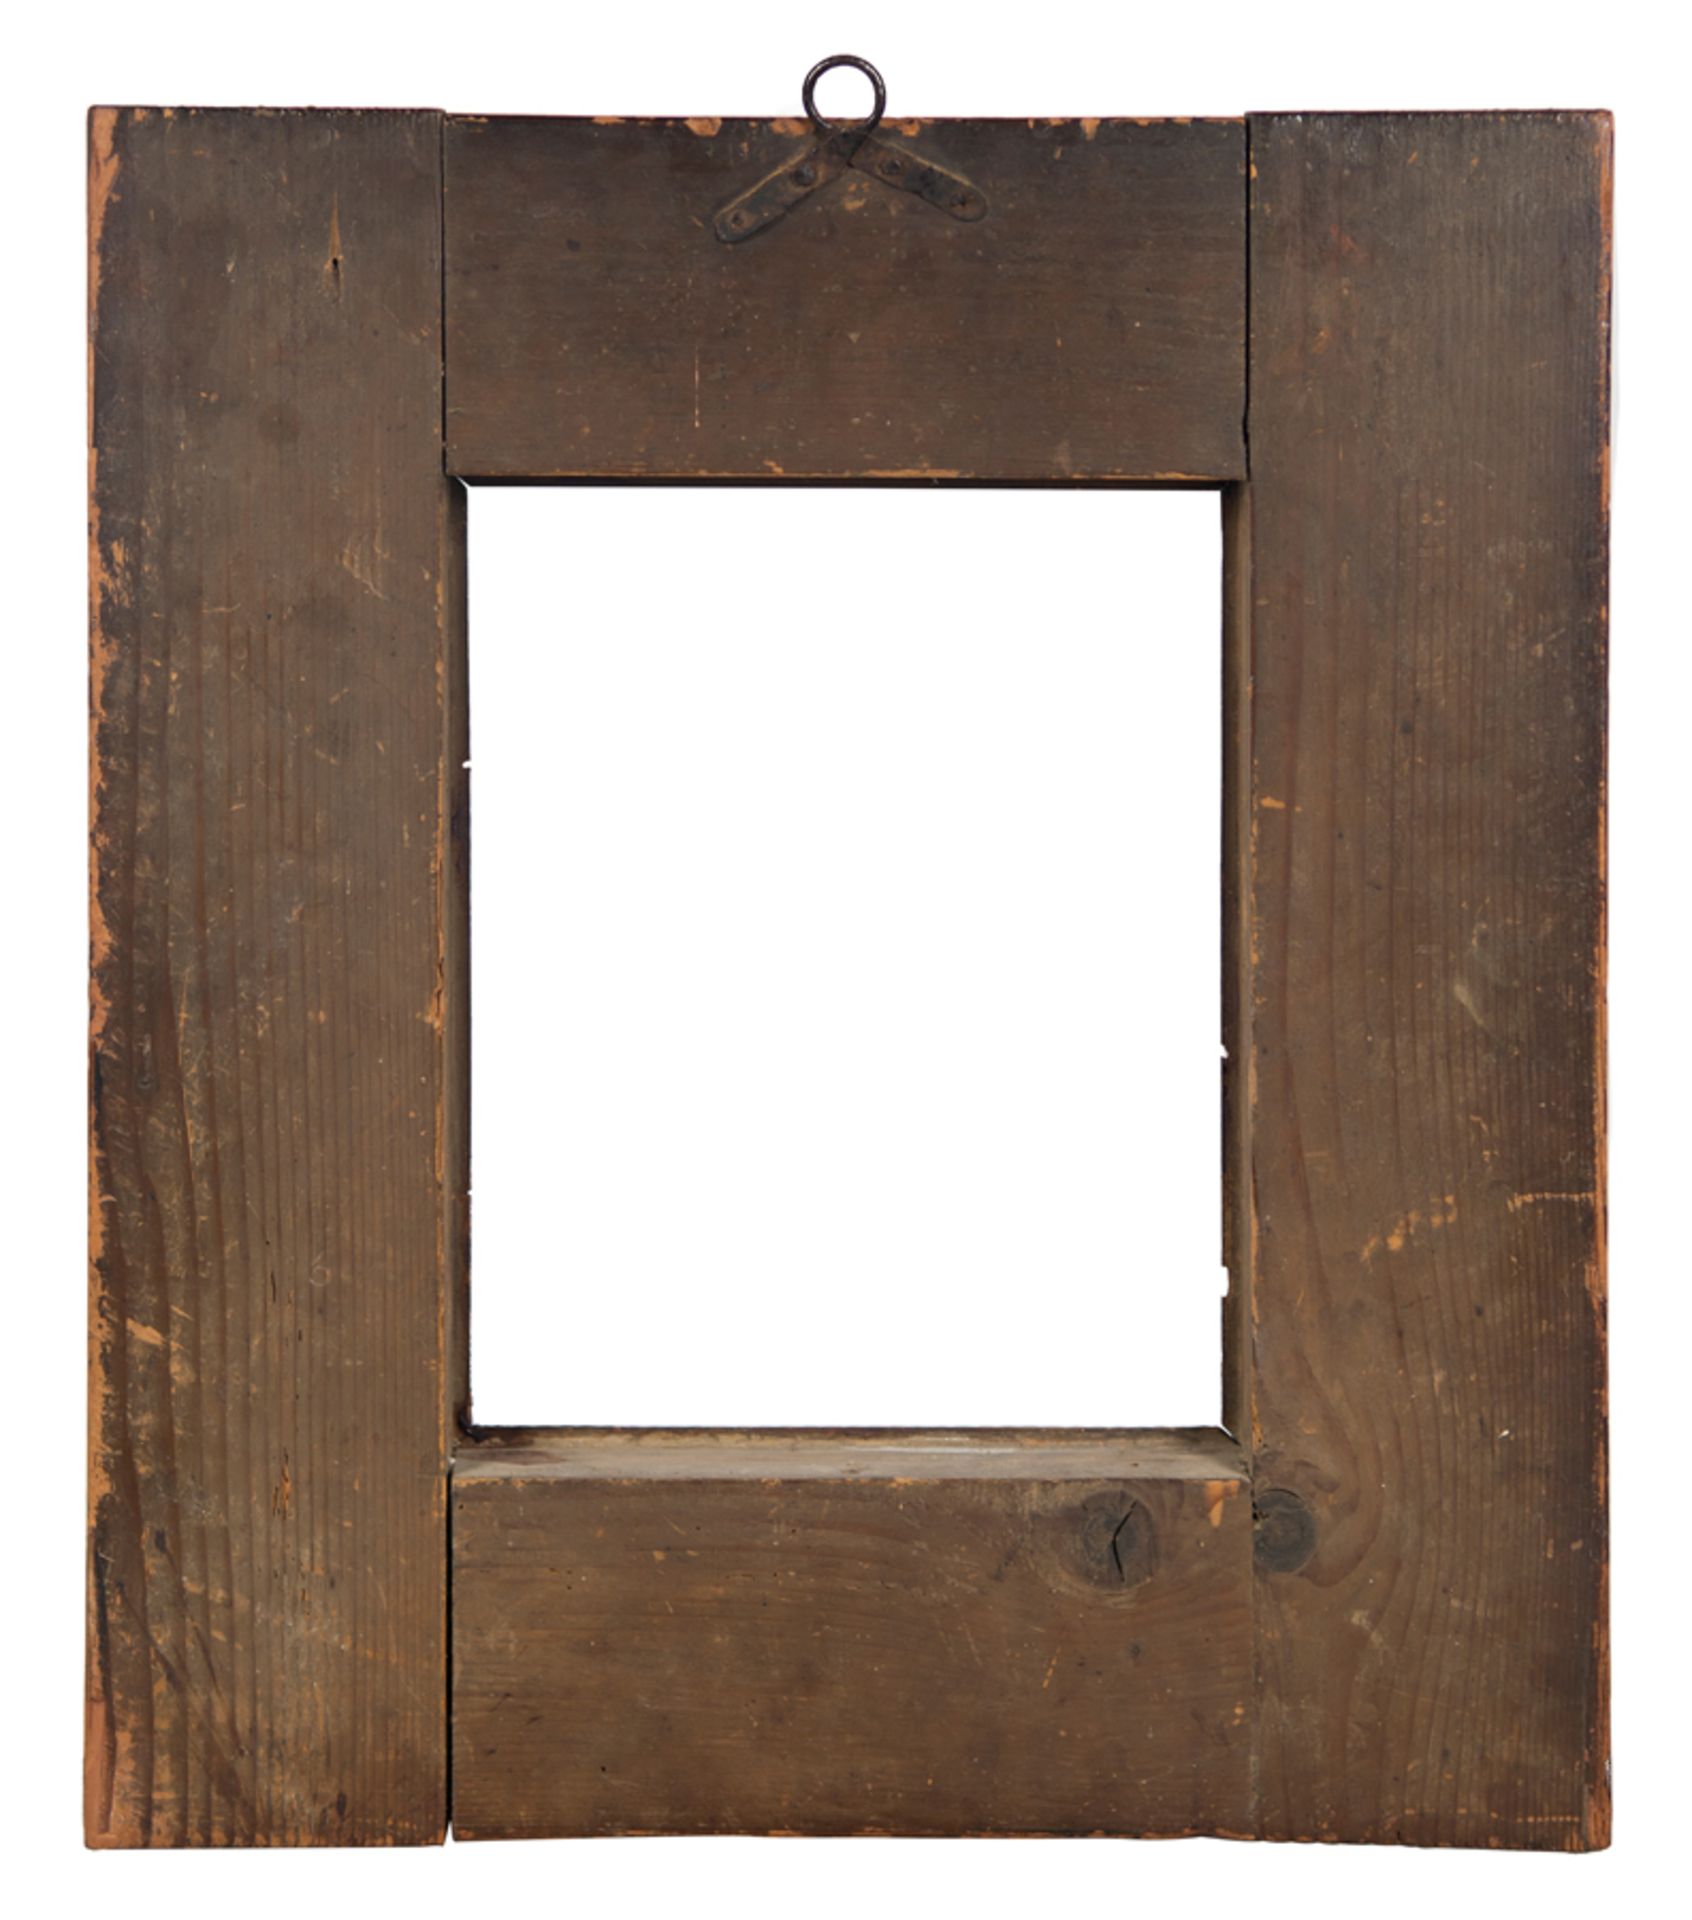 Carved wooden frame. Netherlandish work. 17th - 18th century. - Bild 3 aus 3